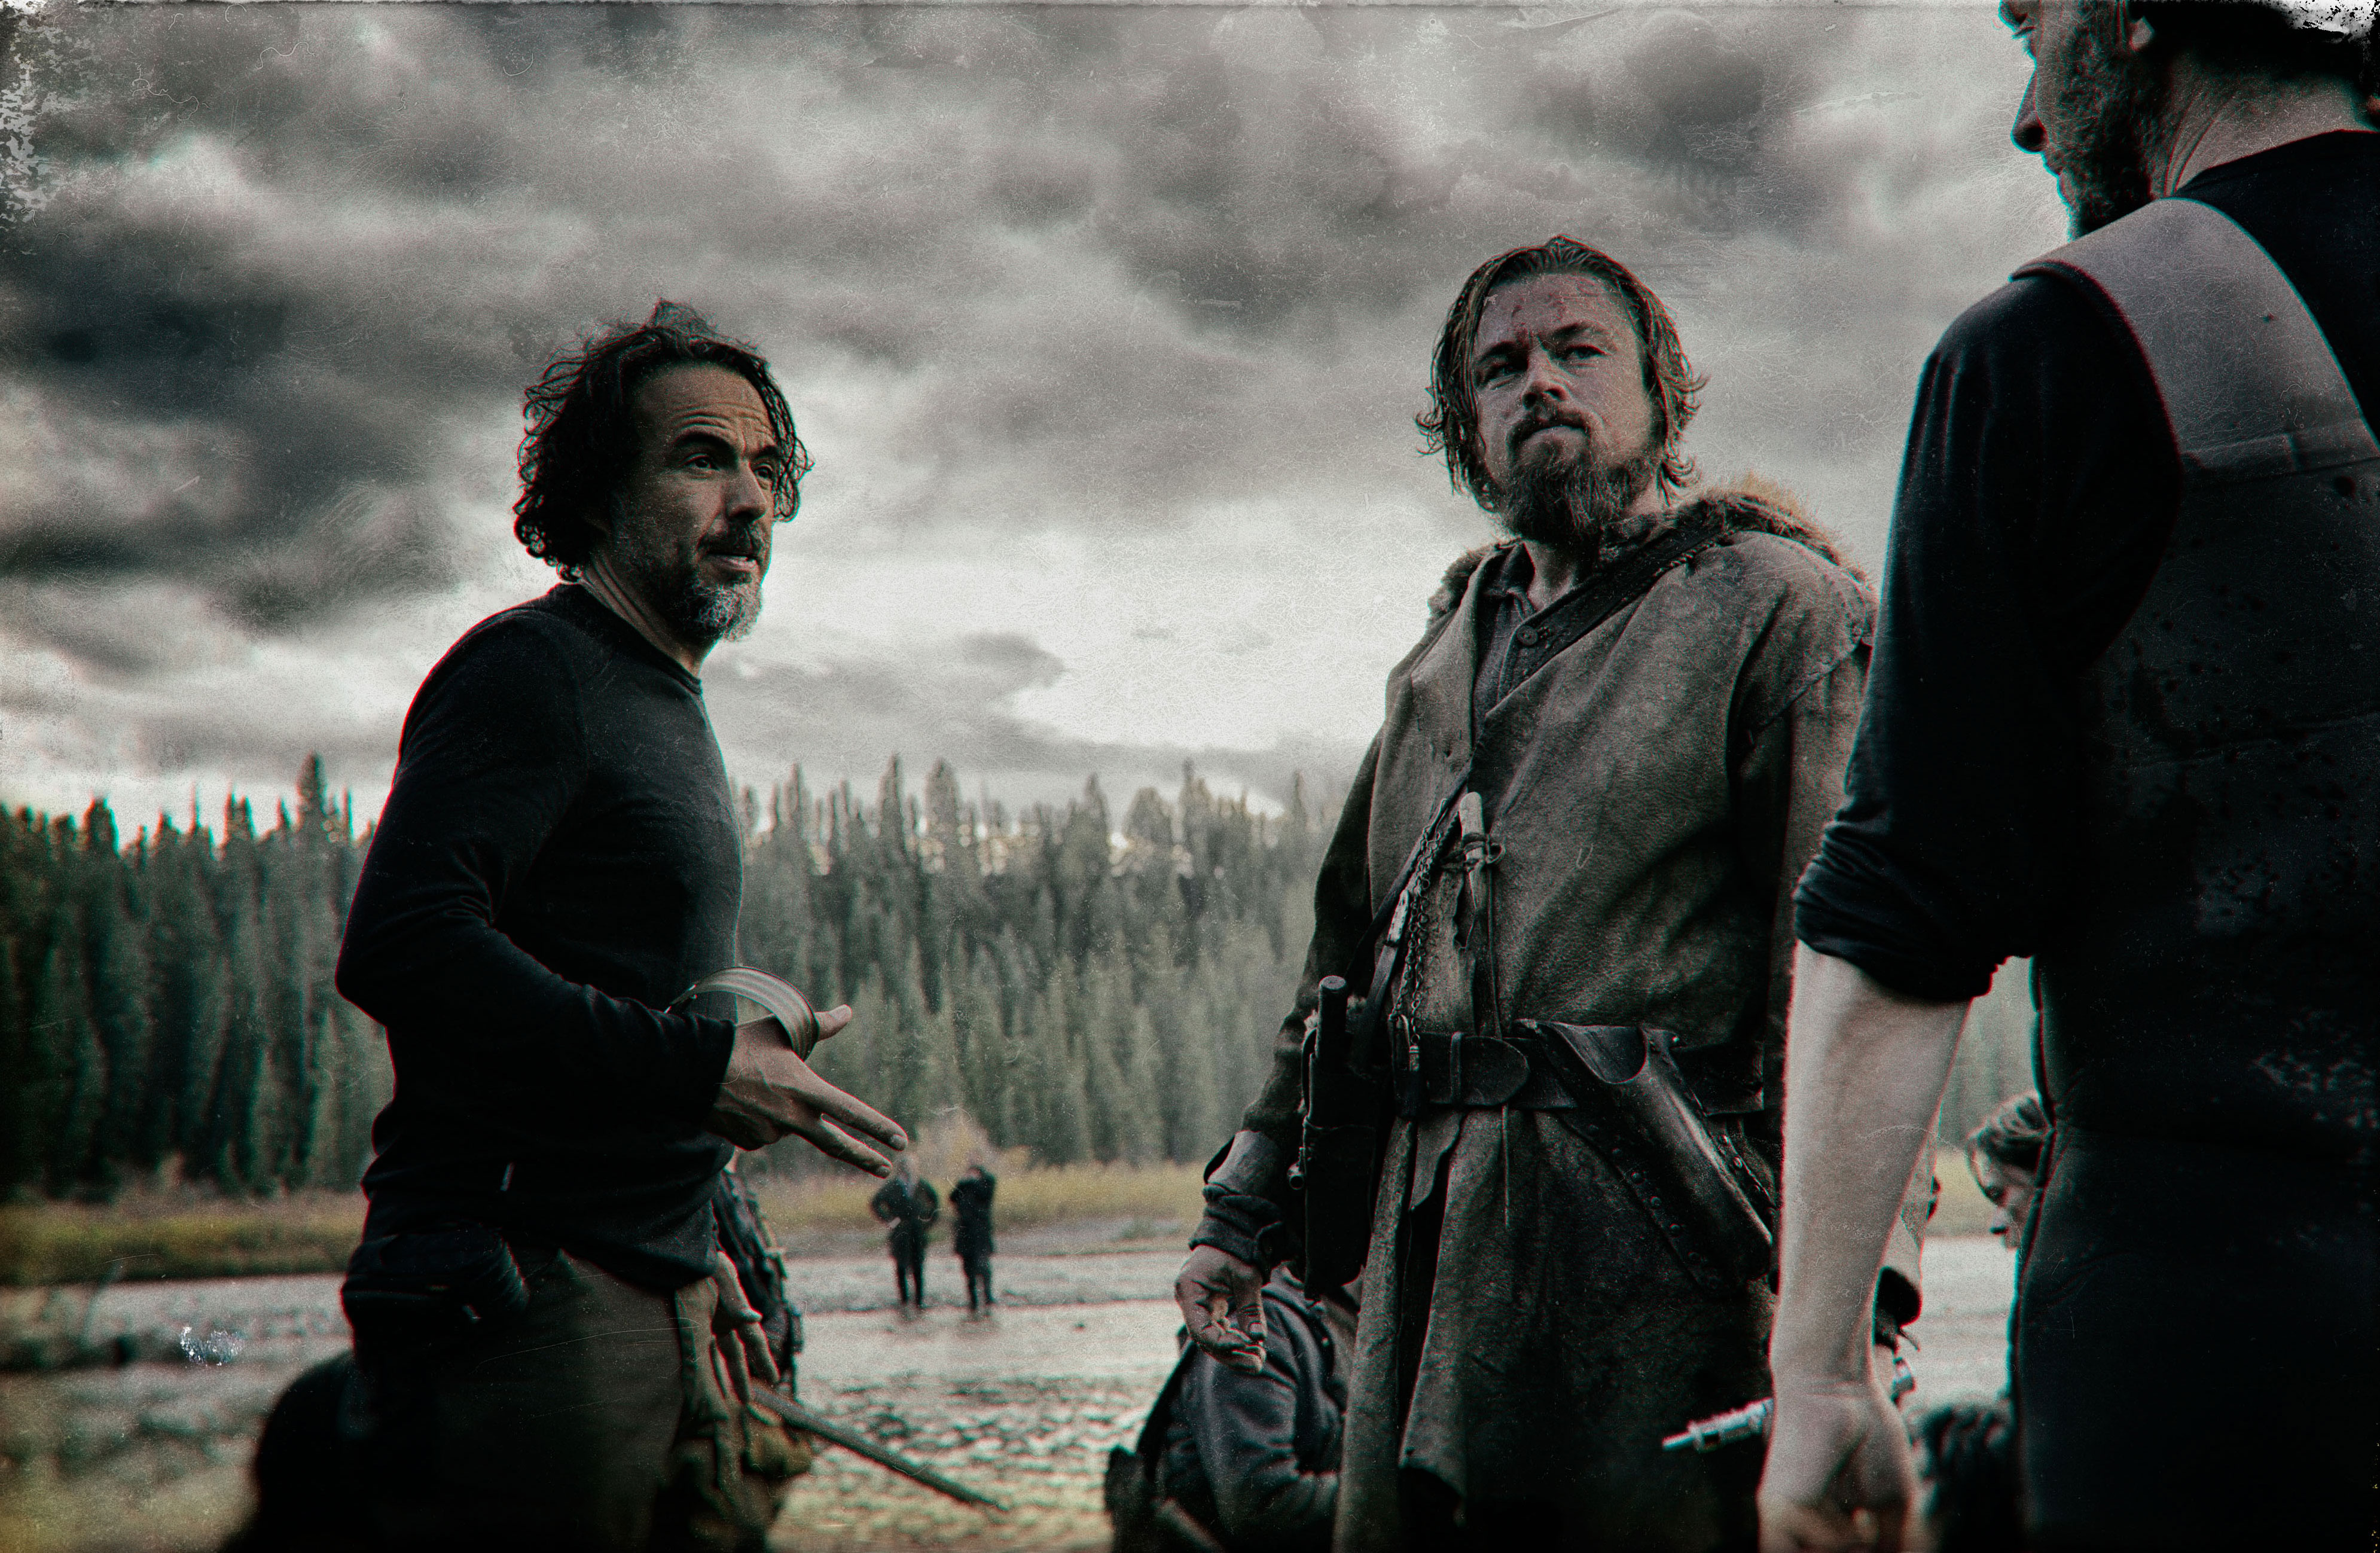 Leonardo DiCaprio in Alejandro Iñárritu’s hard-hitting ‘The Revenant’ trailer